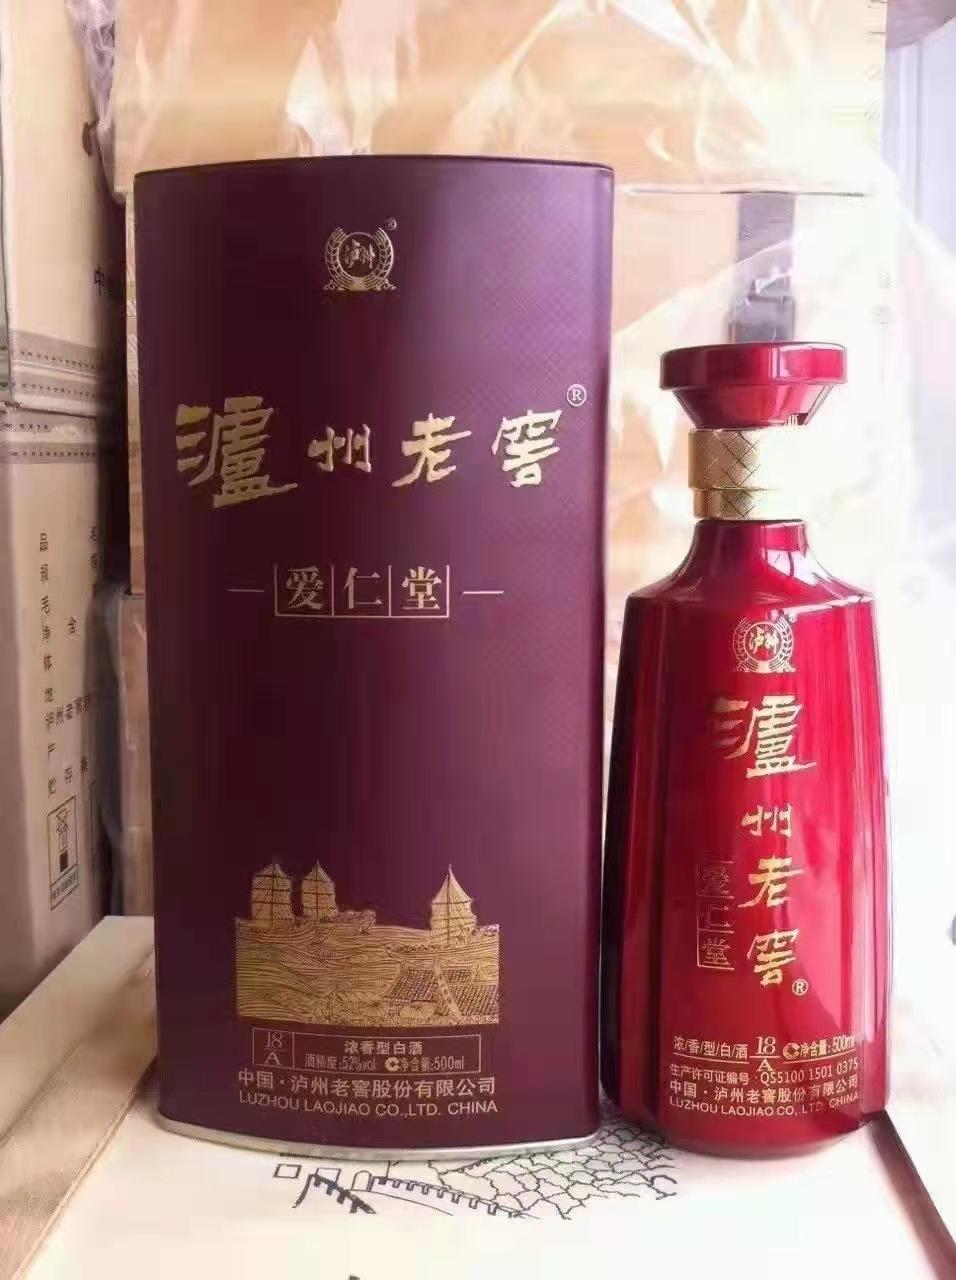 白酒泸州酒 2015年生产泸州铁盒红瓶4瓶装52度浓香型 白酒批发